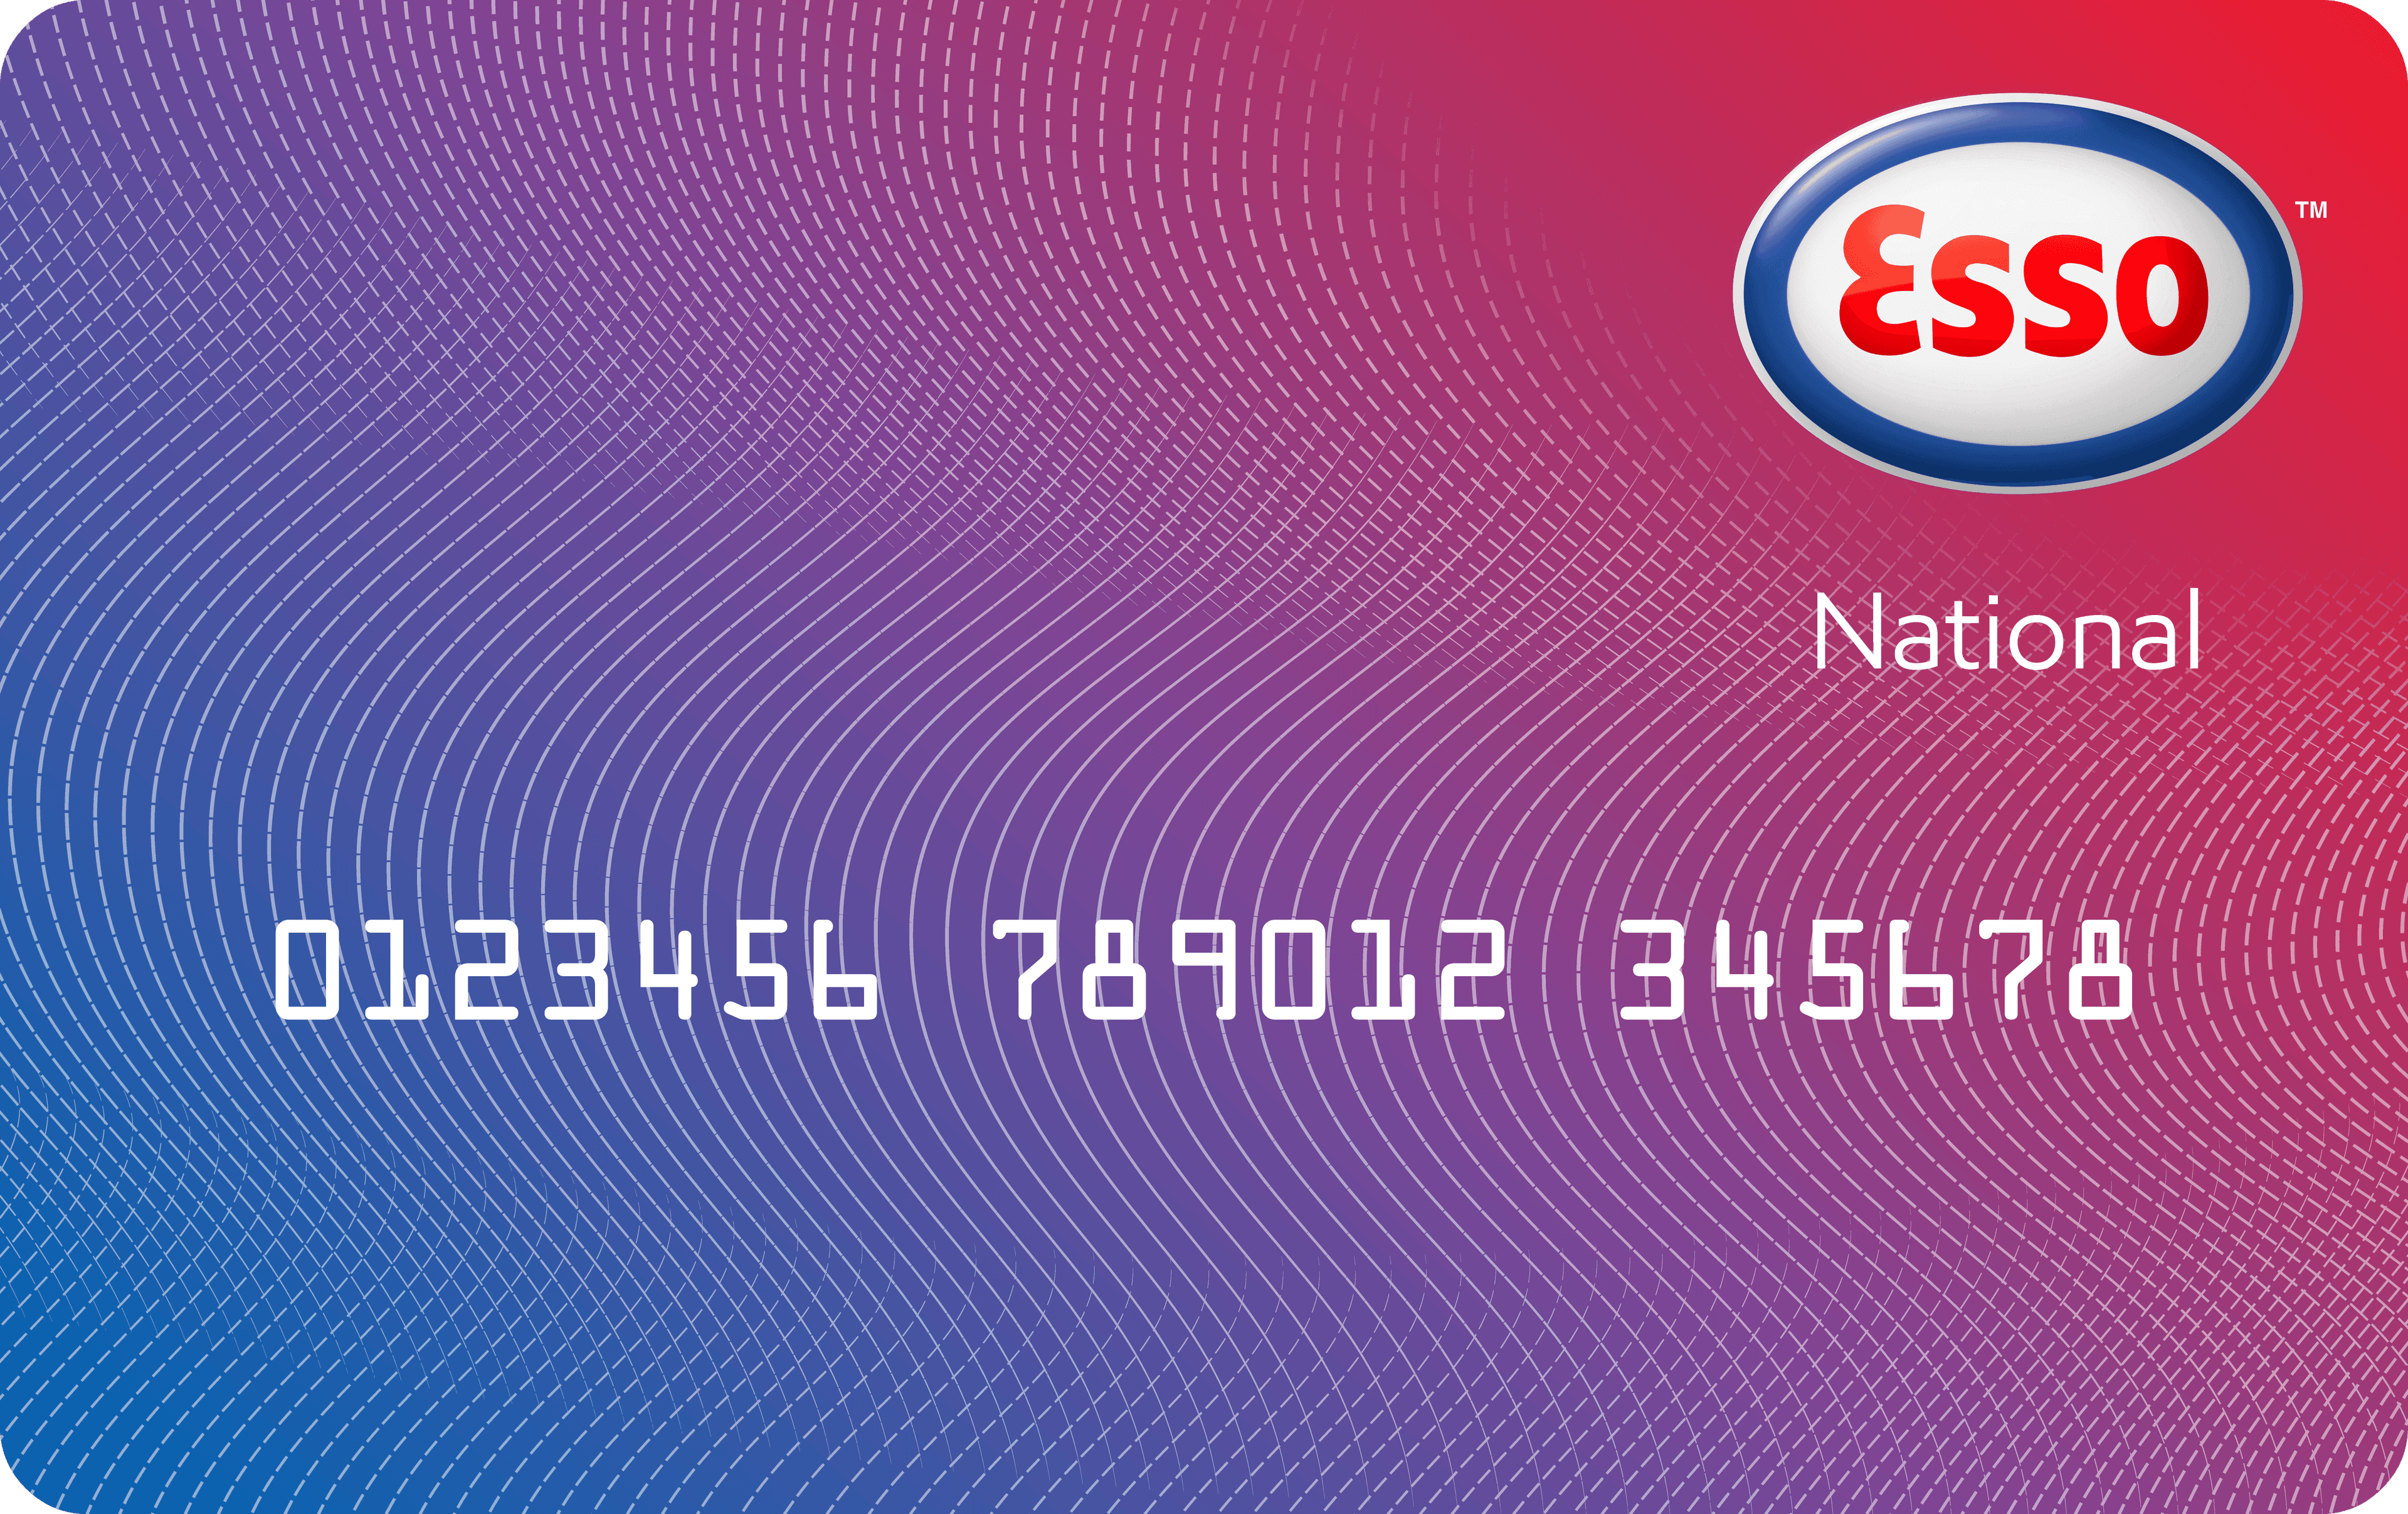 Esso national card